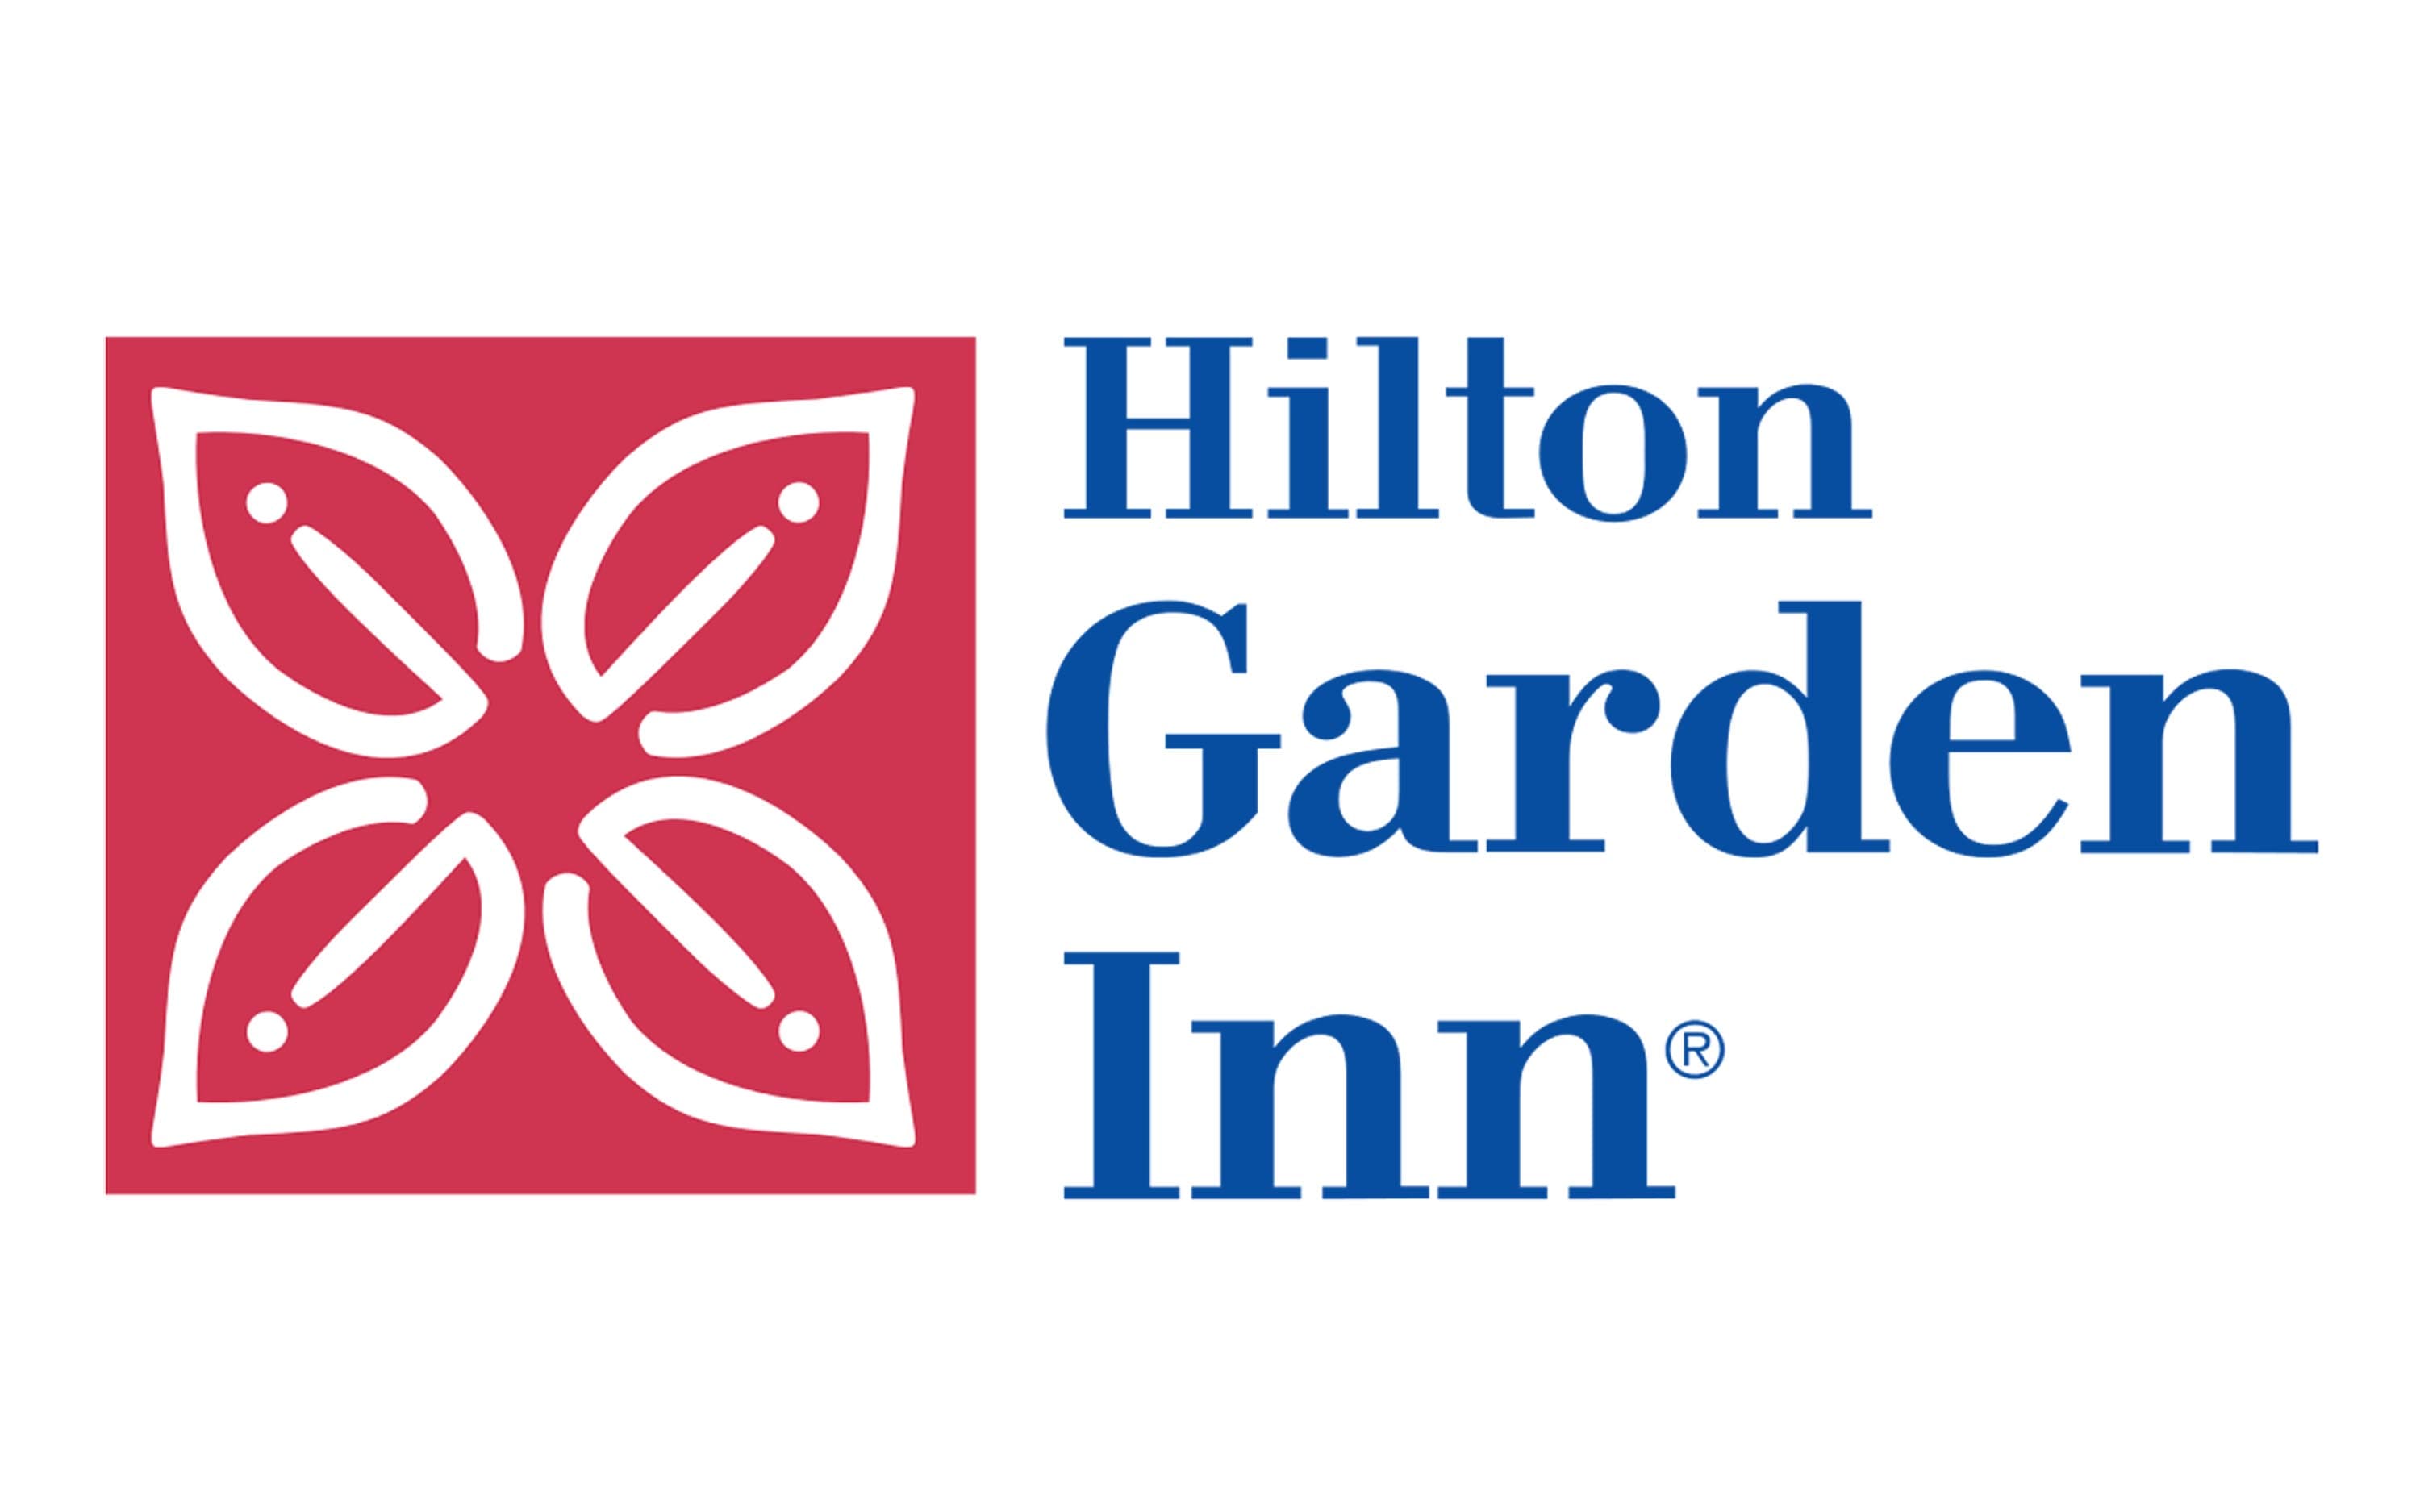 hilton garden inn logo flower